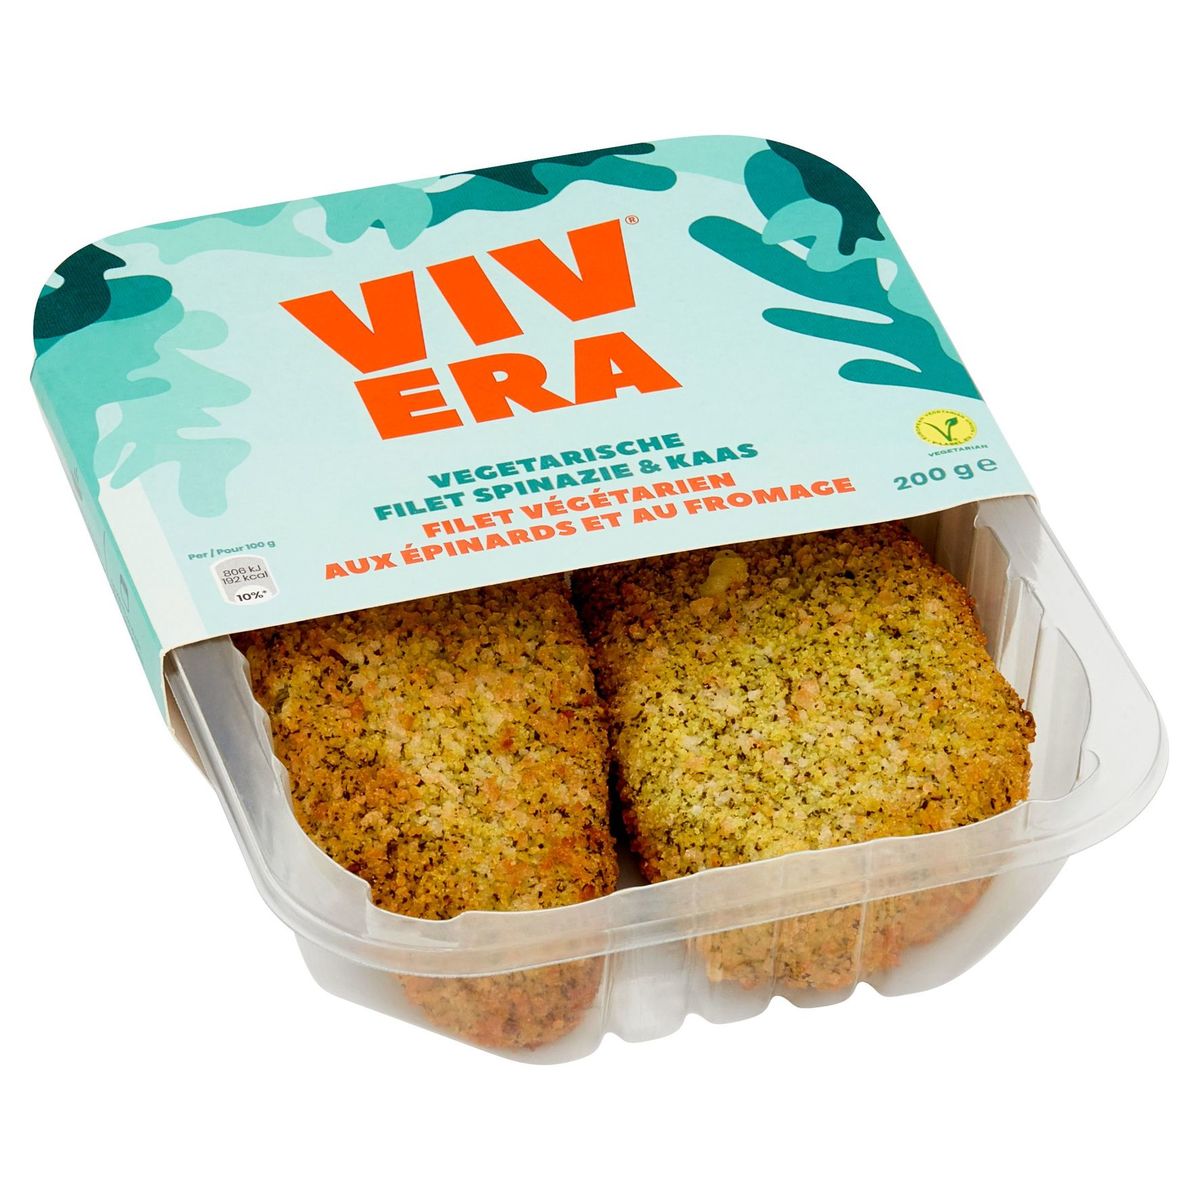 Vivera Vegetarische Filet Spinazie & Kaas 200 g